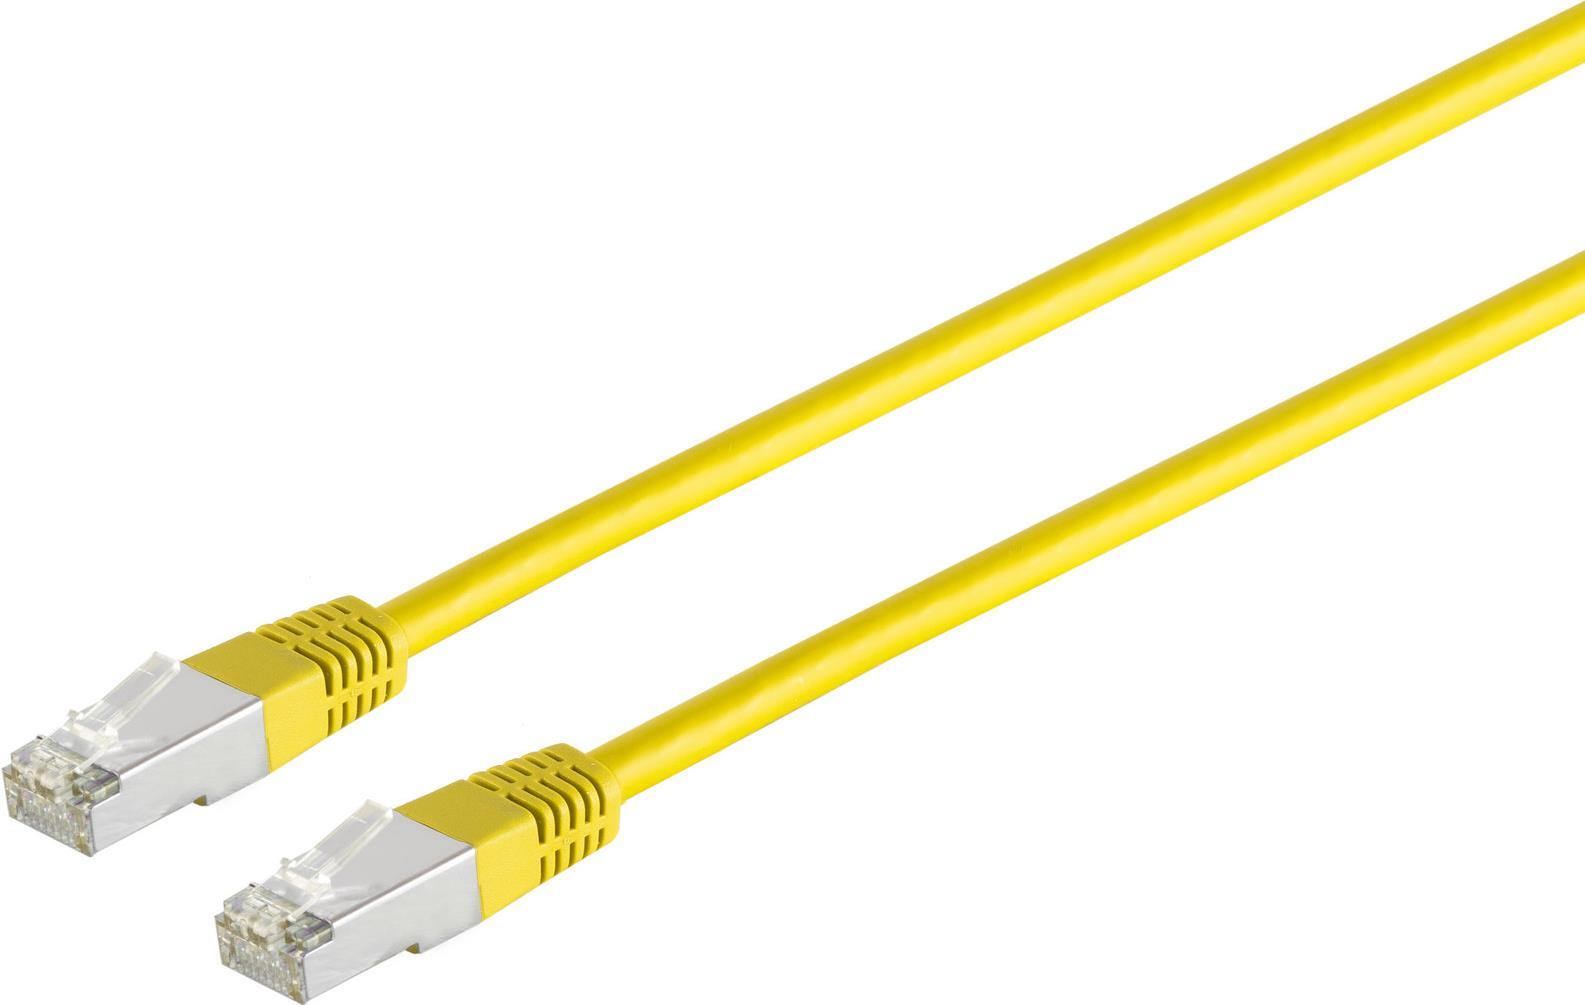 S/CONN maximum connectivity Netzwerkkabel-Patchkabel, cat. 5e, SF/UTP, gelb, 25,0m (75227-Y)